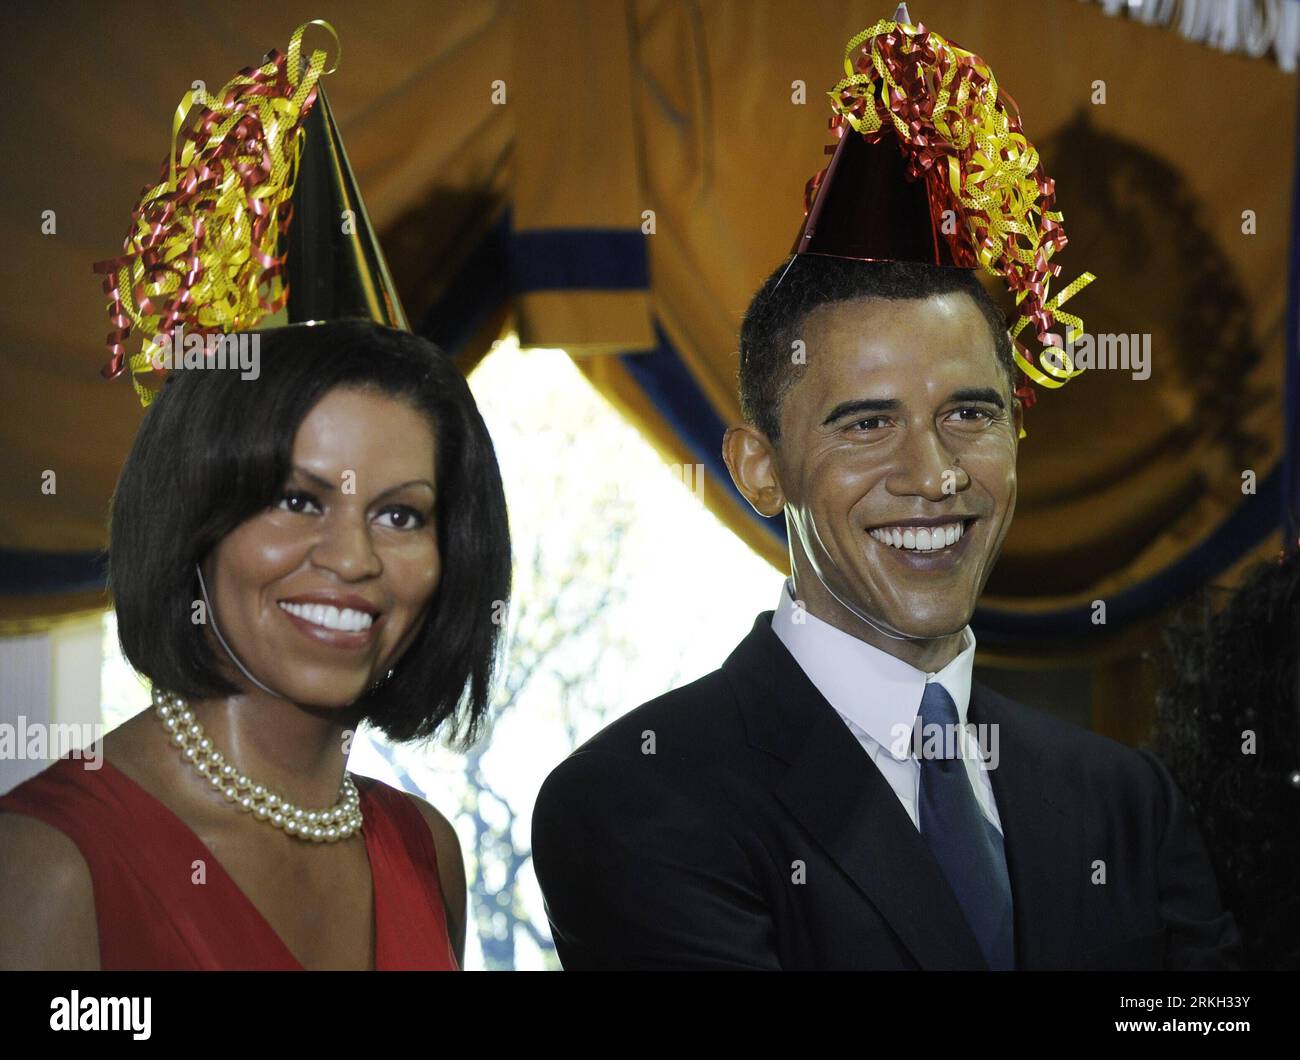 Número de archivo: 55679229 Fecha: 04.08.2011 Copyright: Imago/Xinhua (110804) -- WASHINGTON D.C., 4 de agosto de 2011 (Xinhua) -- figuras de cera del presidente estadounidense Barack Obama y la primera dama Michelle Obama se visten con sombreros de fiesta durante un evento para celebrar el 50º cumpleaños del Preidente Obama, dentro de la réplica de la Oficina Oval en Madame Tussauds, en Washington D.C., capital de los Estados Unidos, el 4 de agosto de 2011. EE.UU.-WASHINGTON-OBAMA S CUMPLEAÑOS PUBLICATIONxNOTxINxCHN Gente Politik Geburtstag 50 Feier kurios Komik x0x xst premiumd 2011 quer Highlight Bildnummer 55679229 Fecha 04 08 2011 Derechos de Autor Imago XINHUA Foto de stock